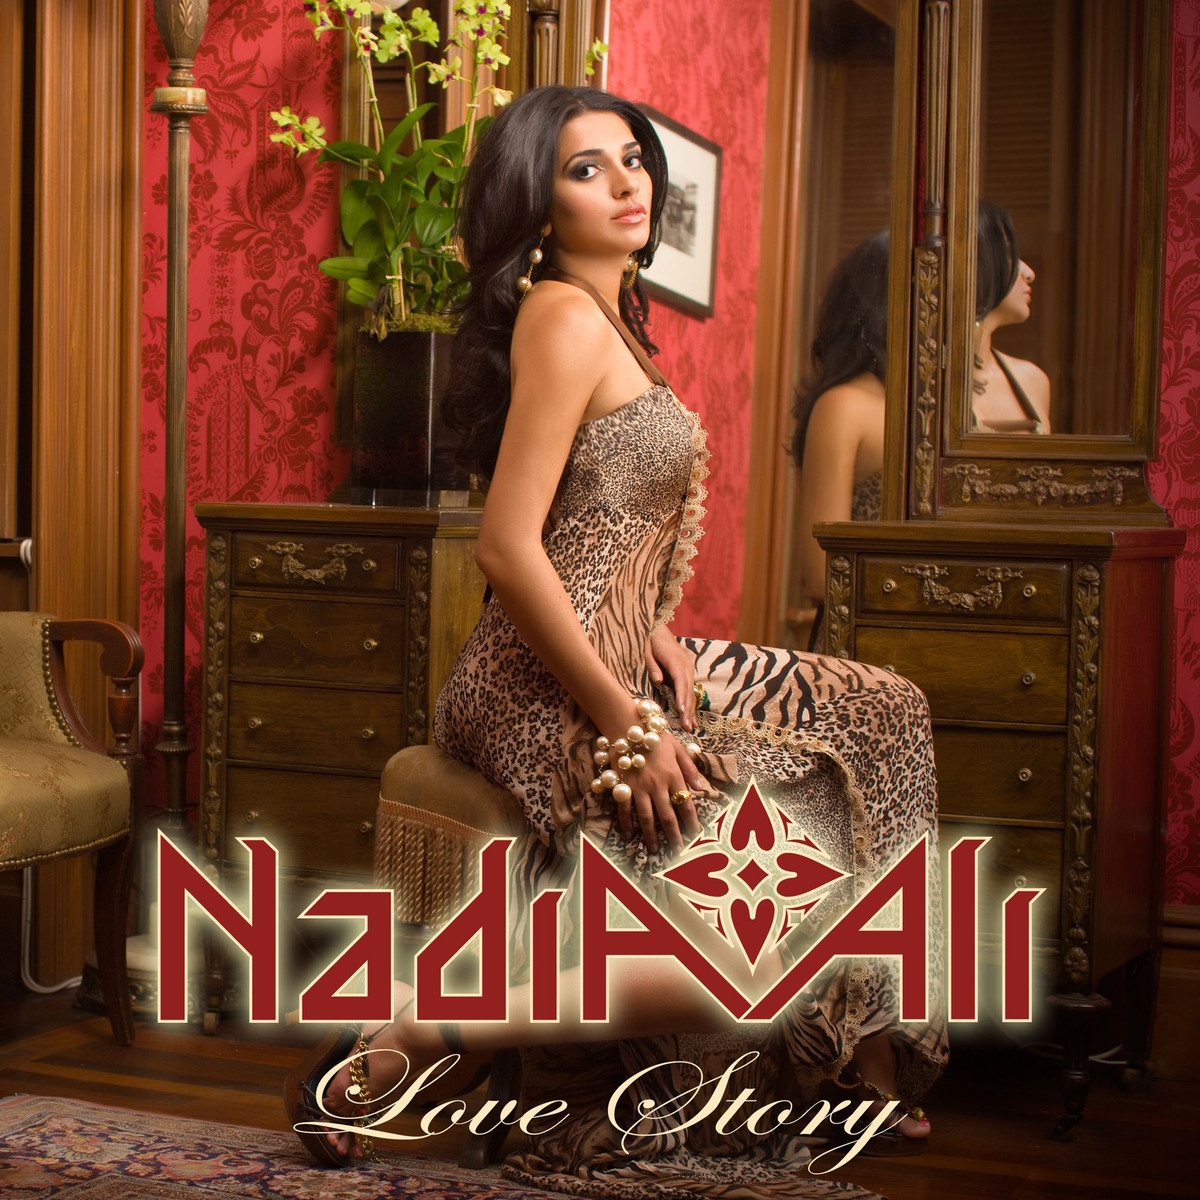 Love Story (Sultan & Ned Shepard Radio Edit)